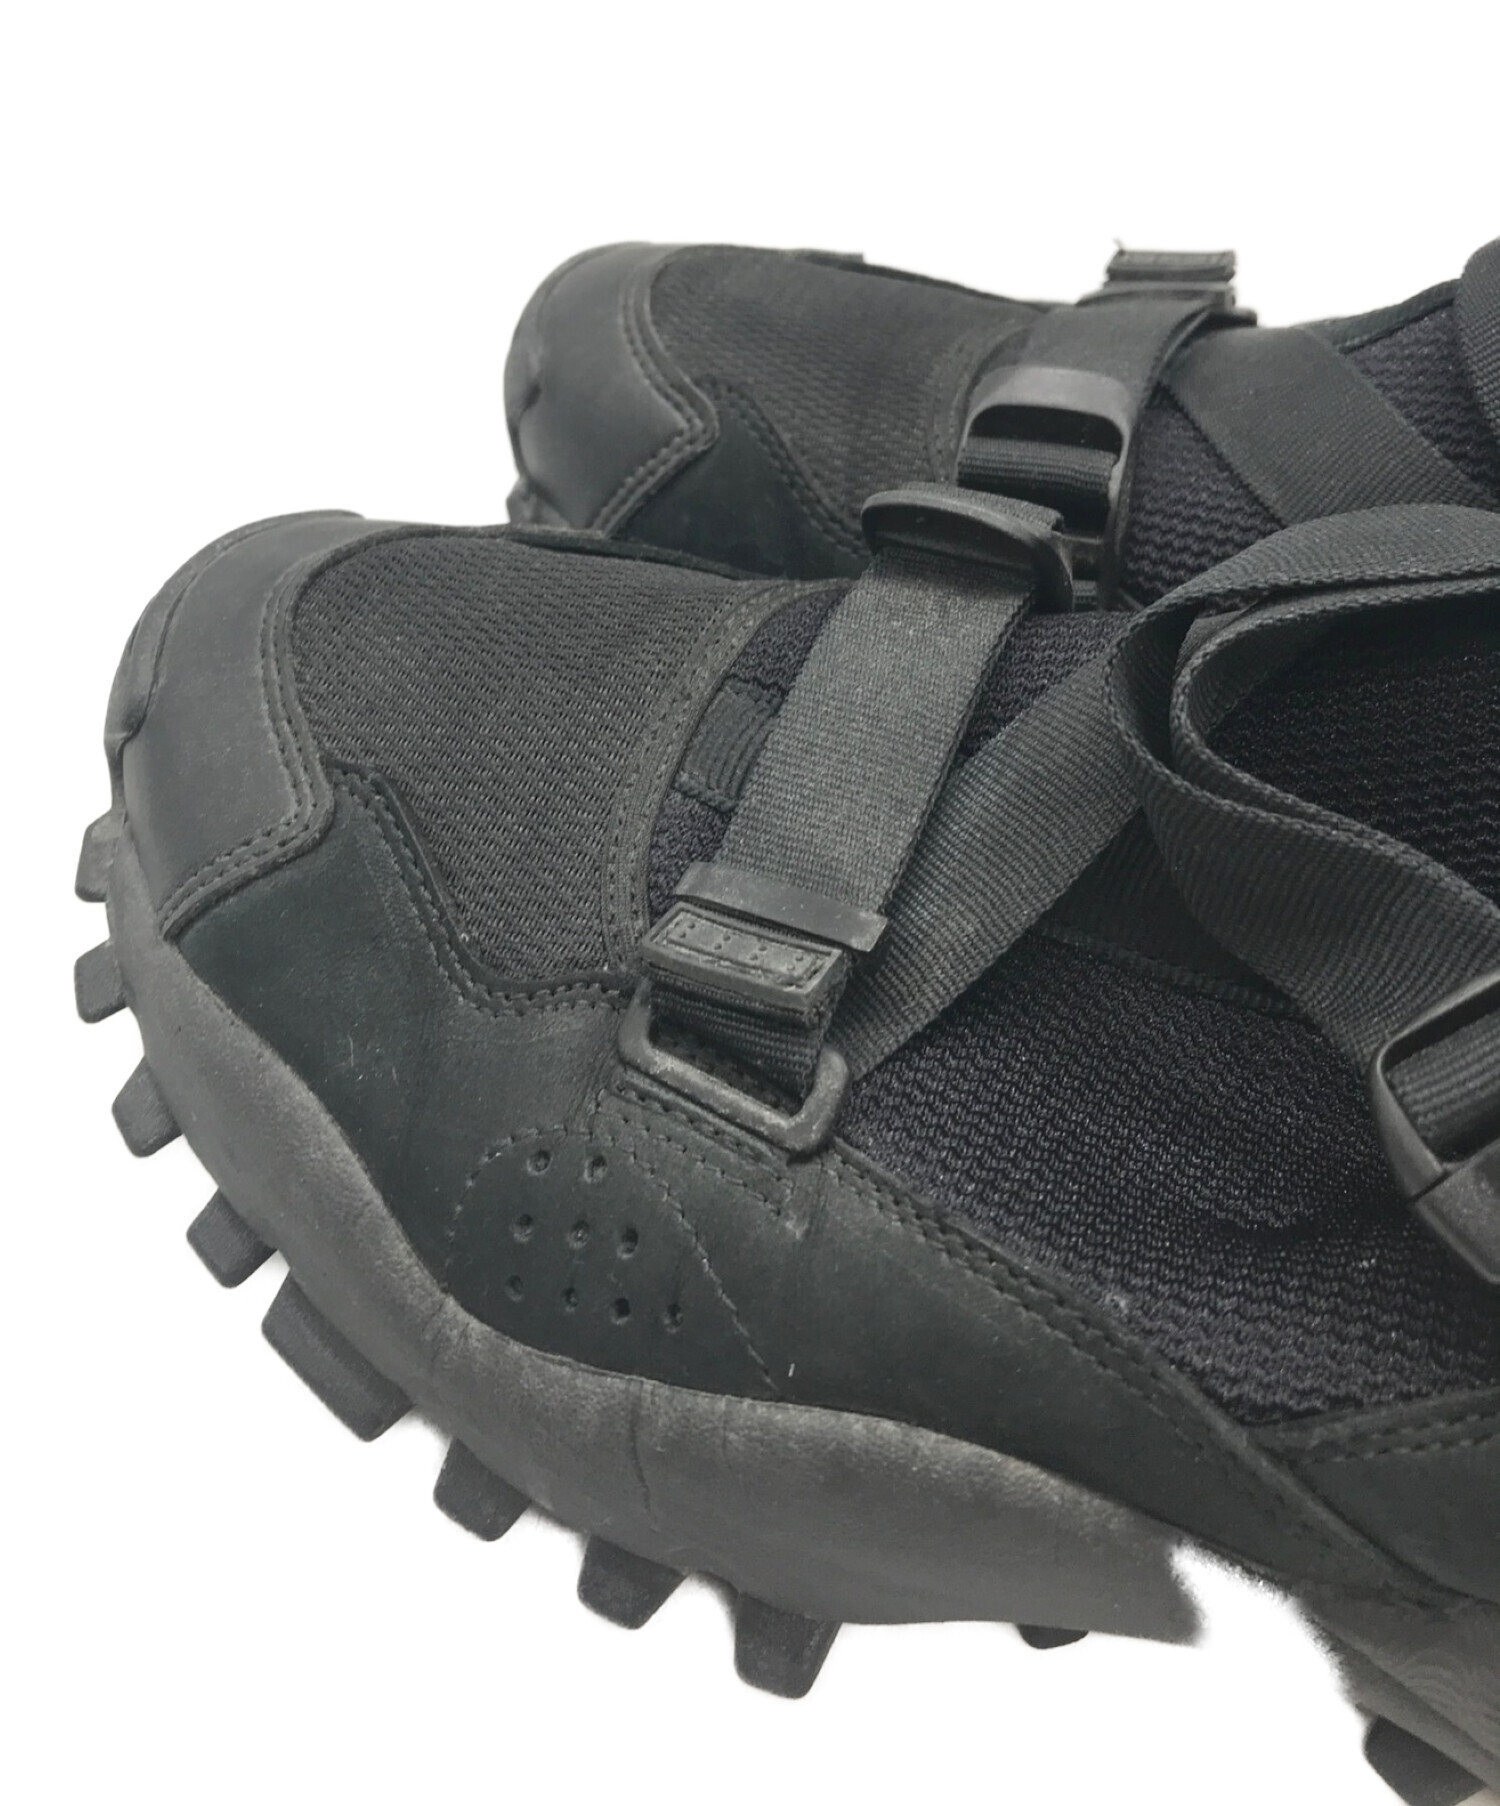 adidas (アディダス) HYKE (ハイク) ローカットスニーカー ブラック サイズ:27.5